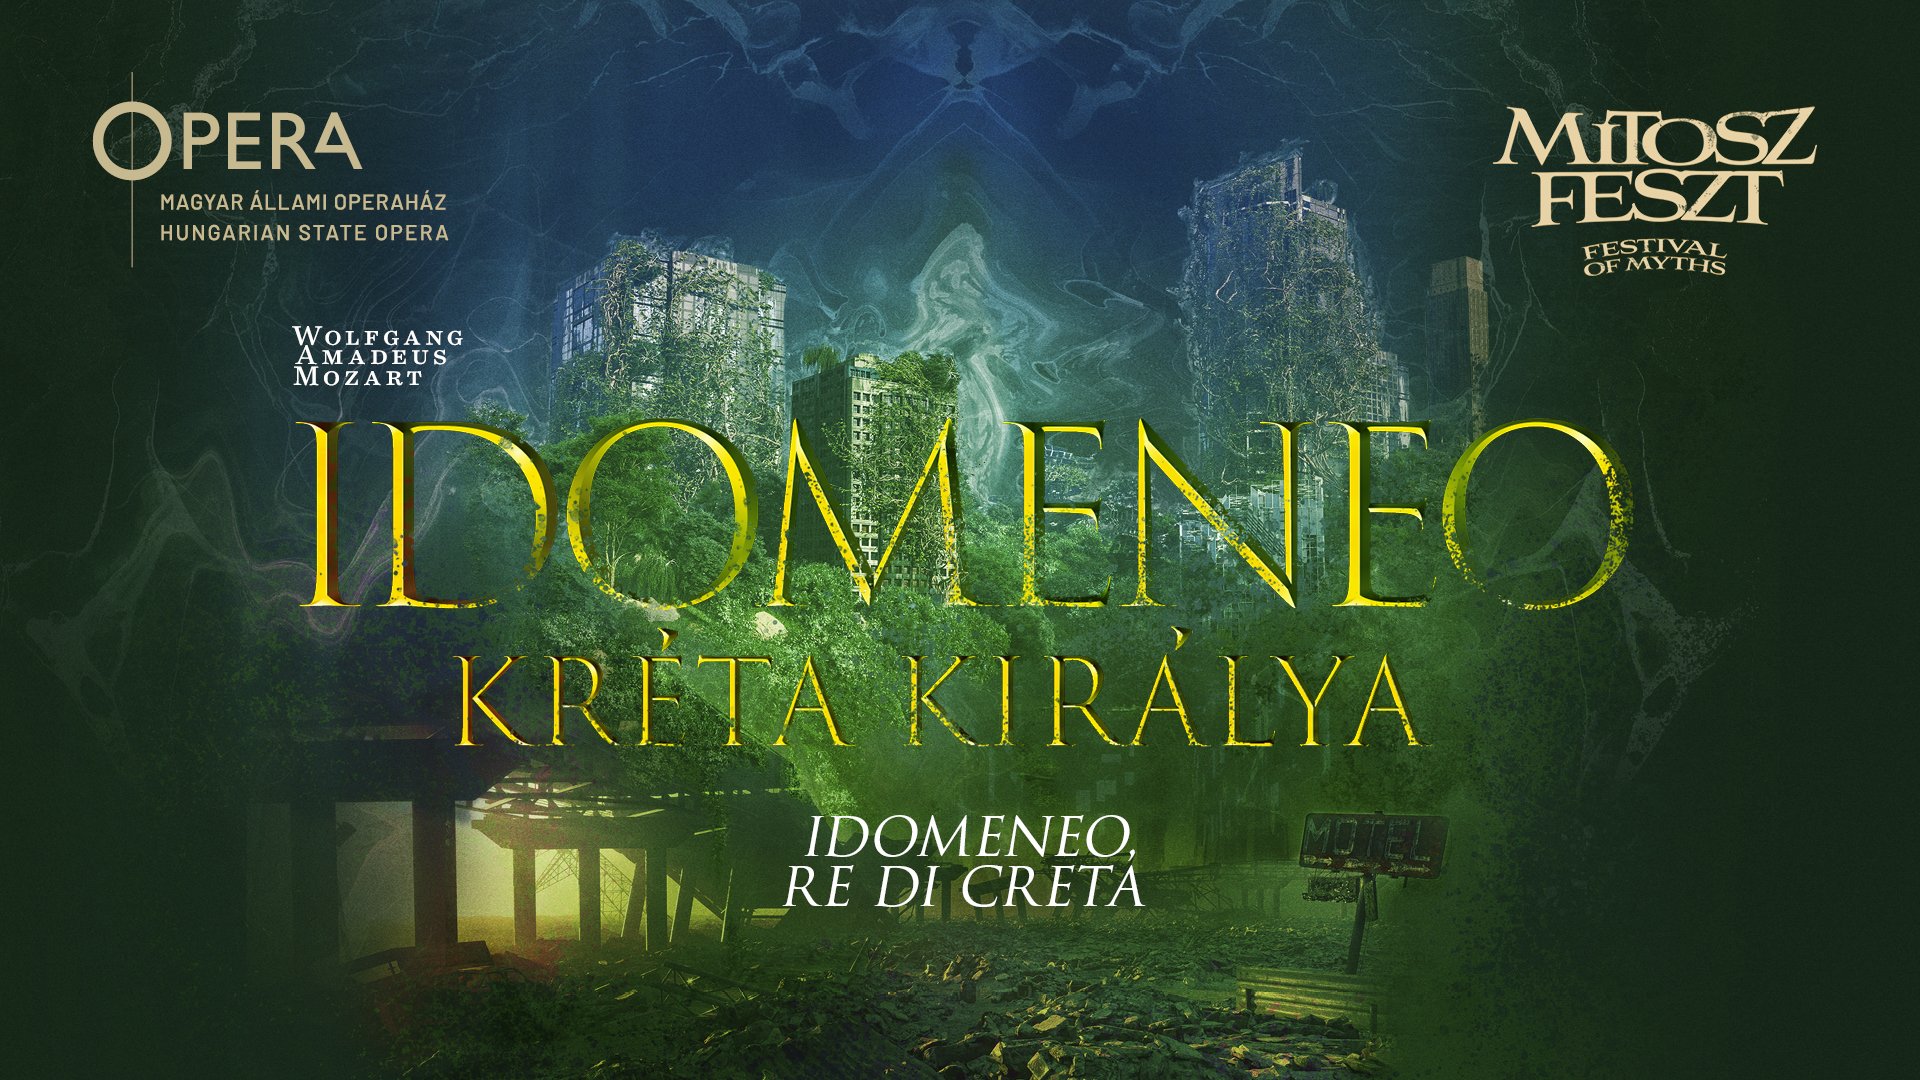 Idomeneo, re di Creta, Opera House Budapest, 25 May